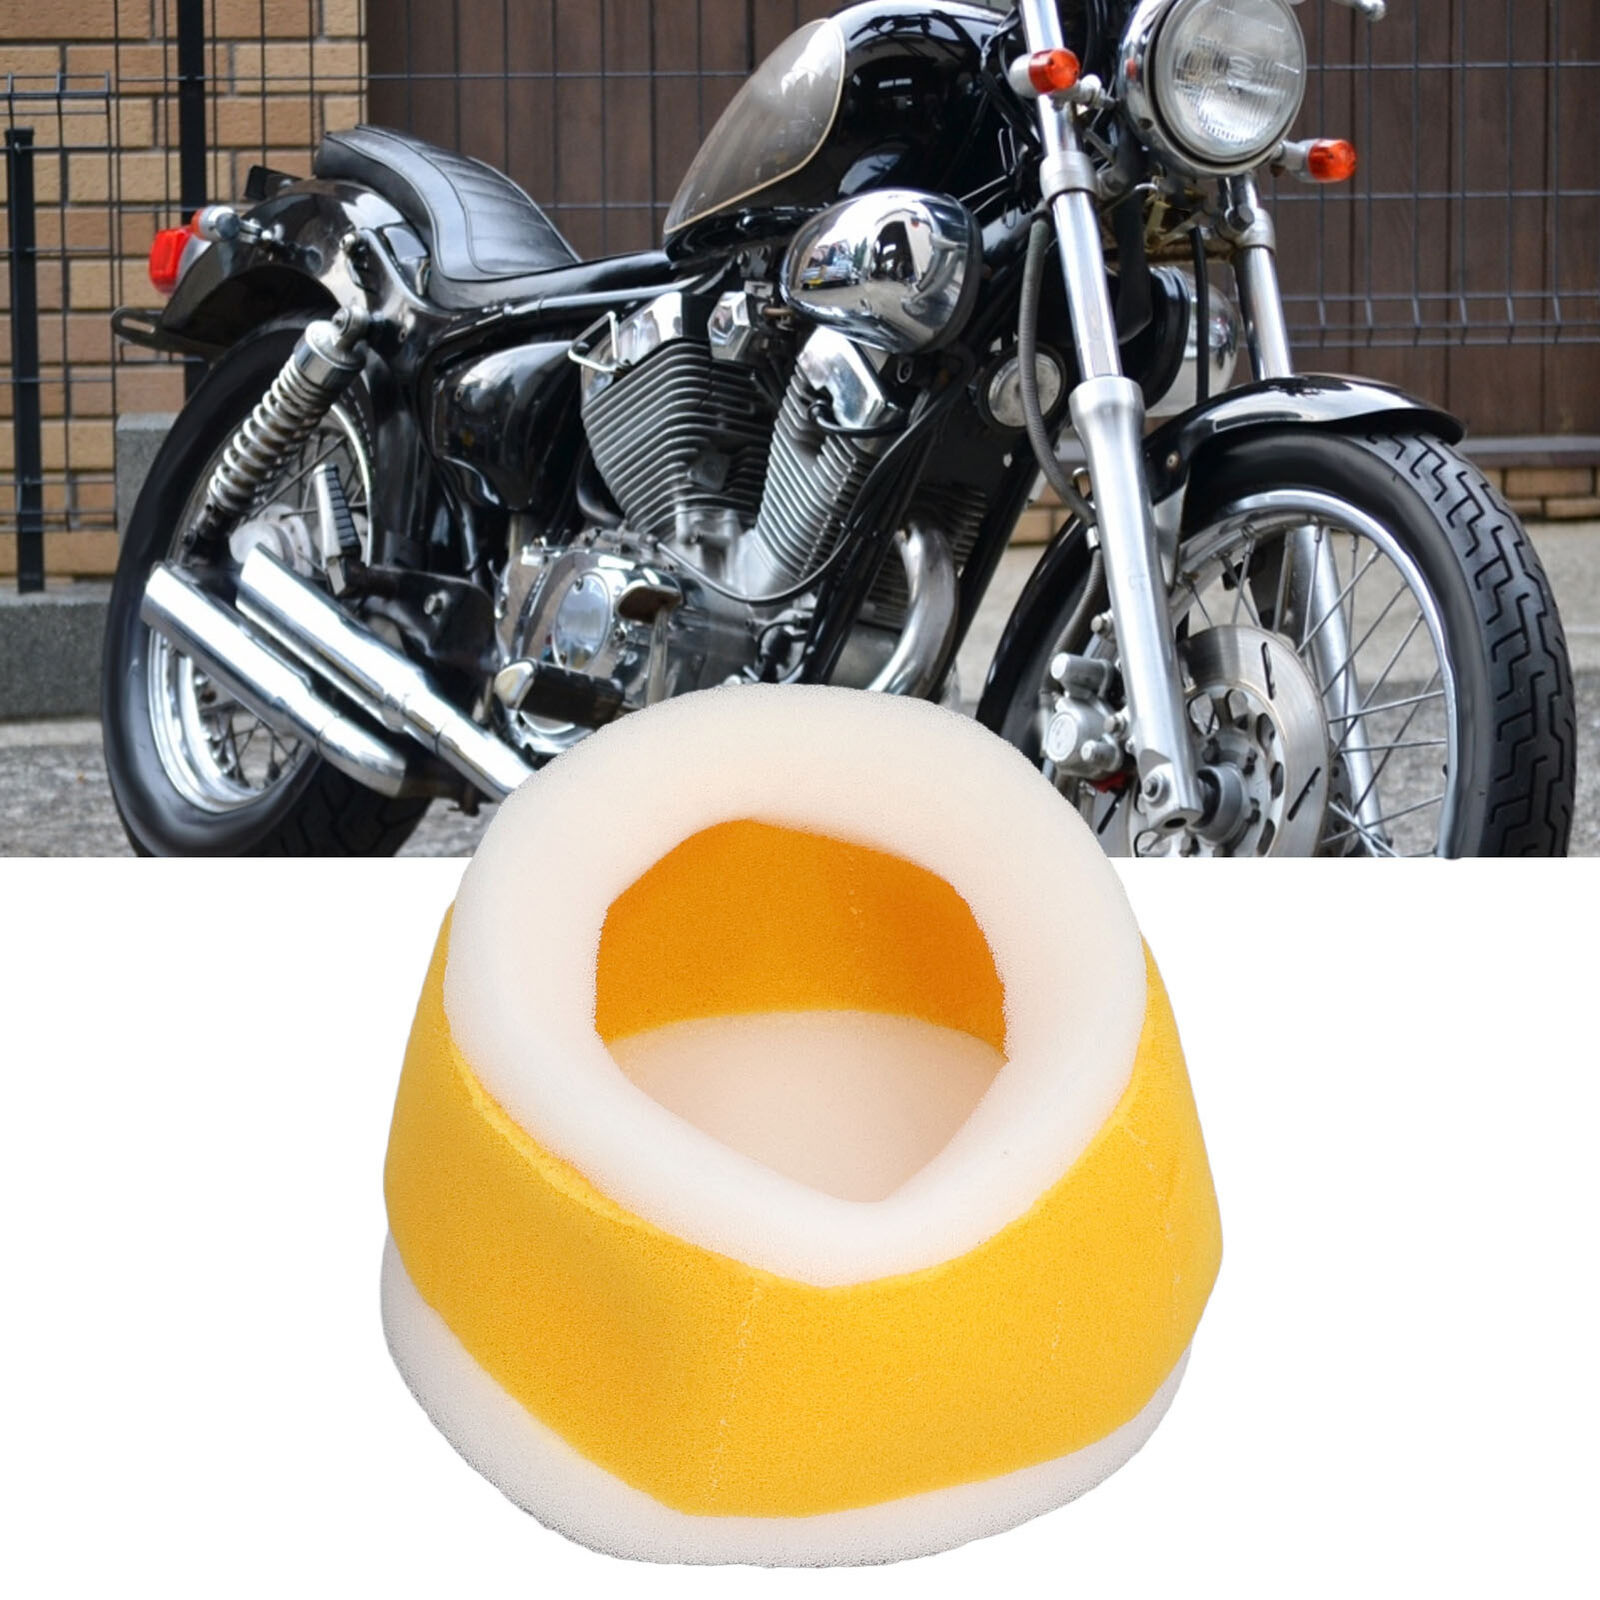 Motorcycle Sponge Air Filter Cleaner Fits For XV250 Virago XV250 VStar 19882015